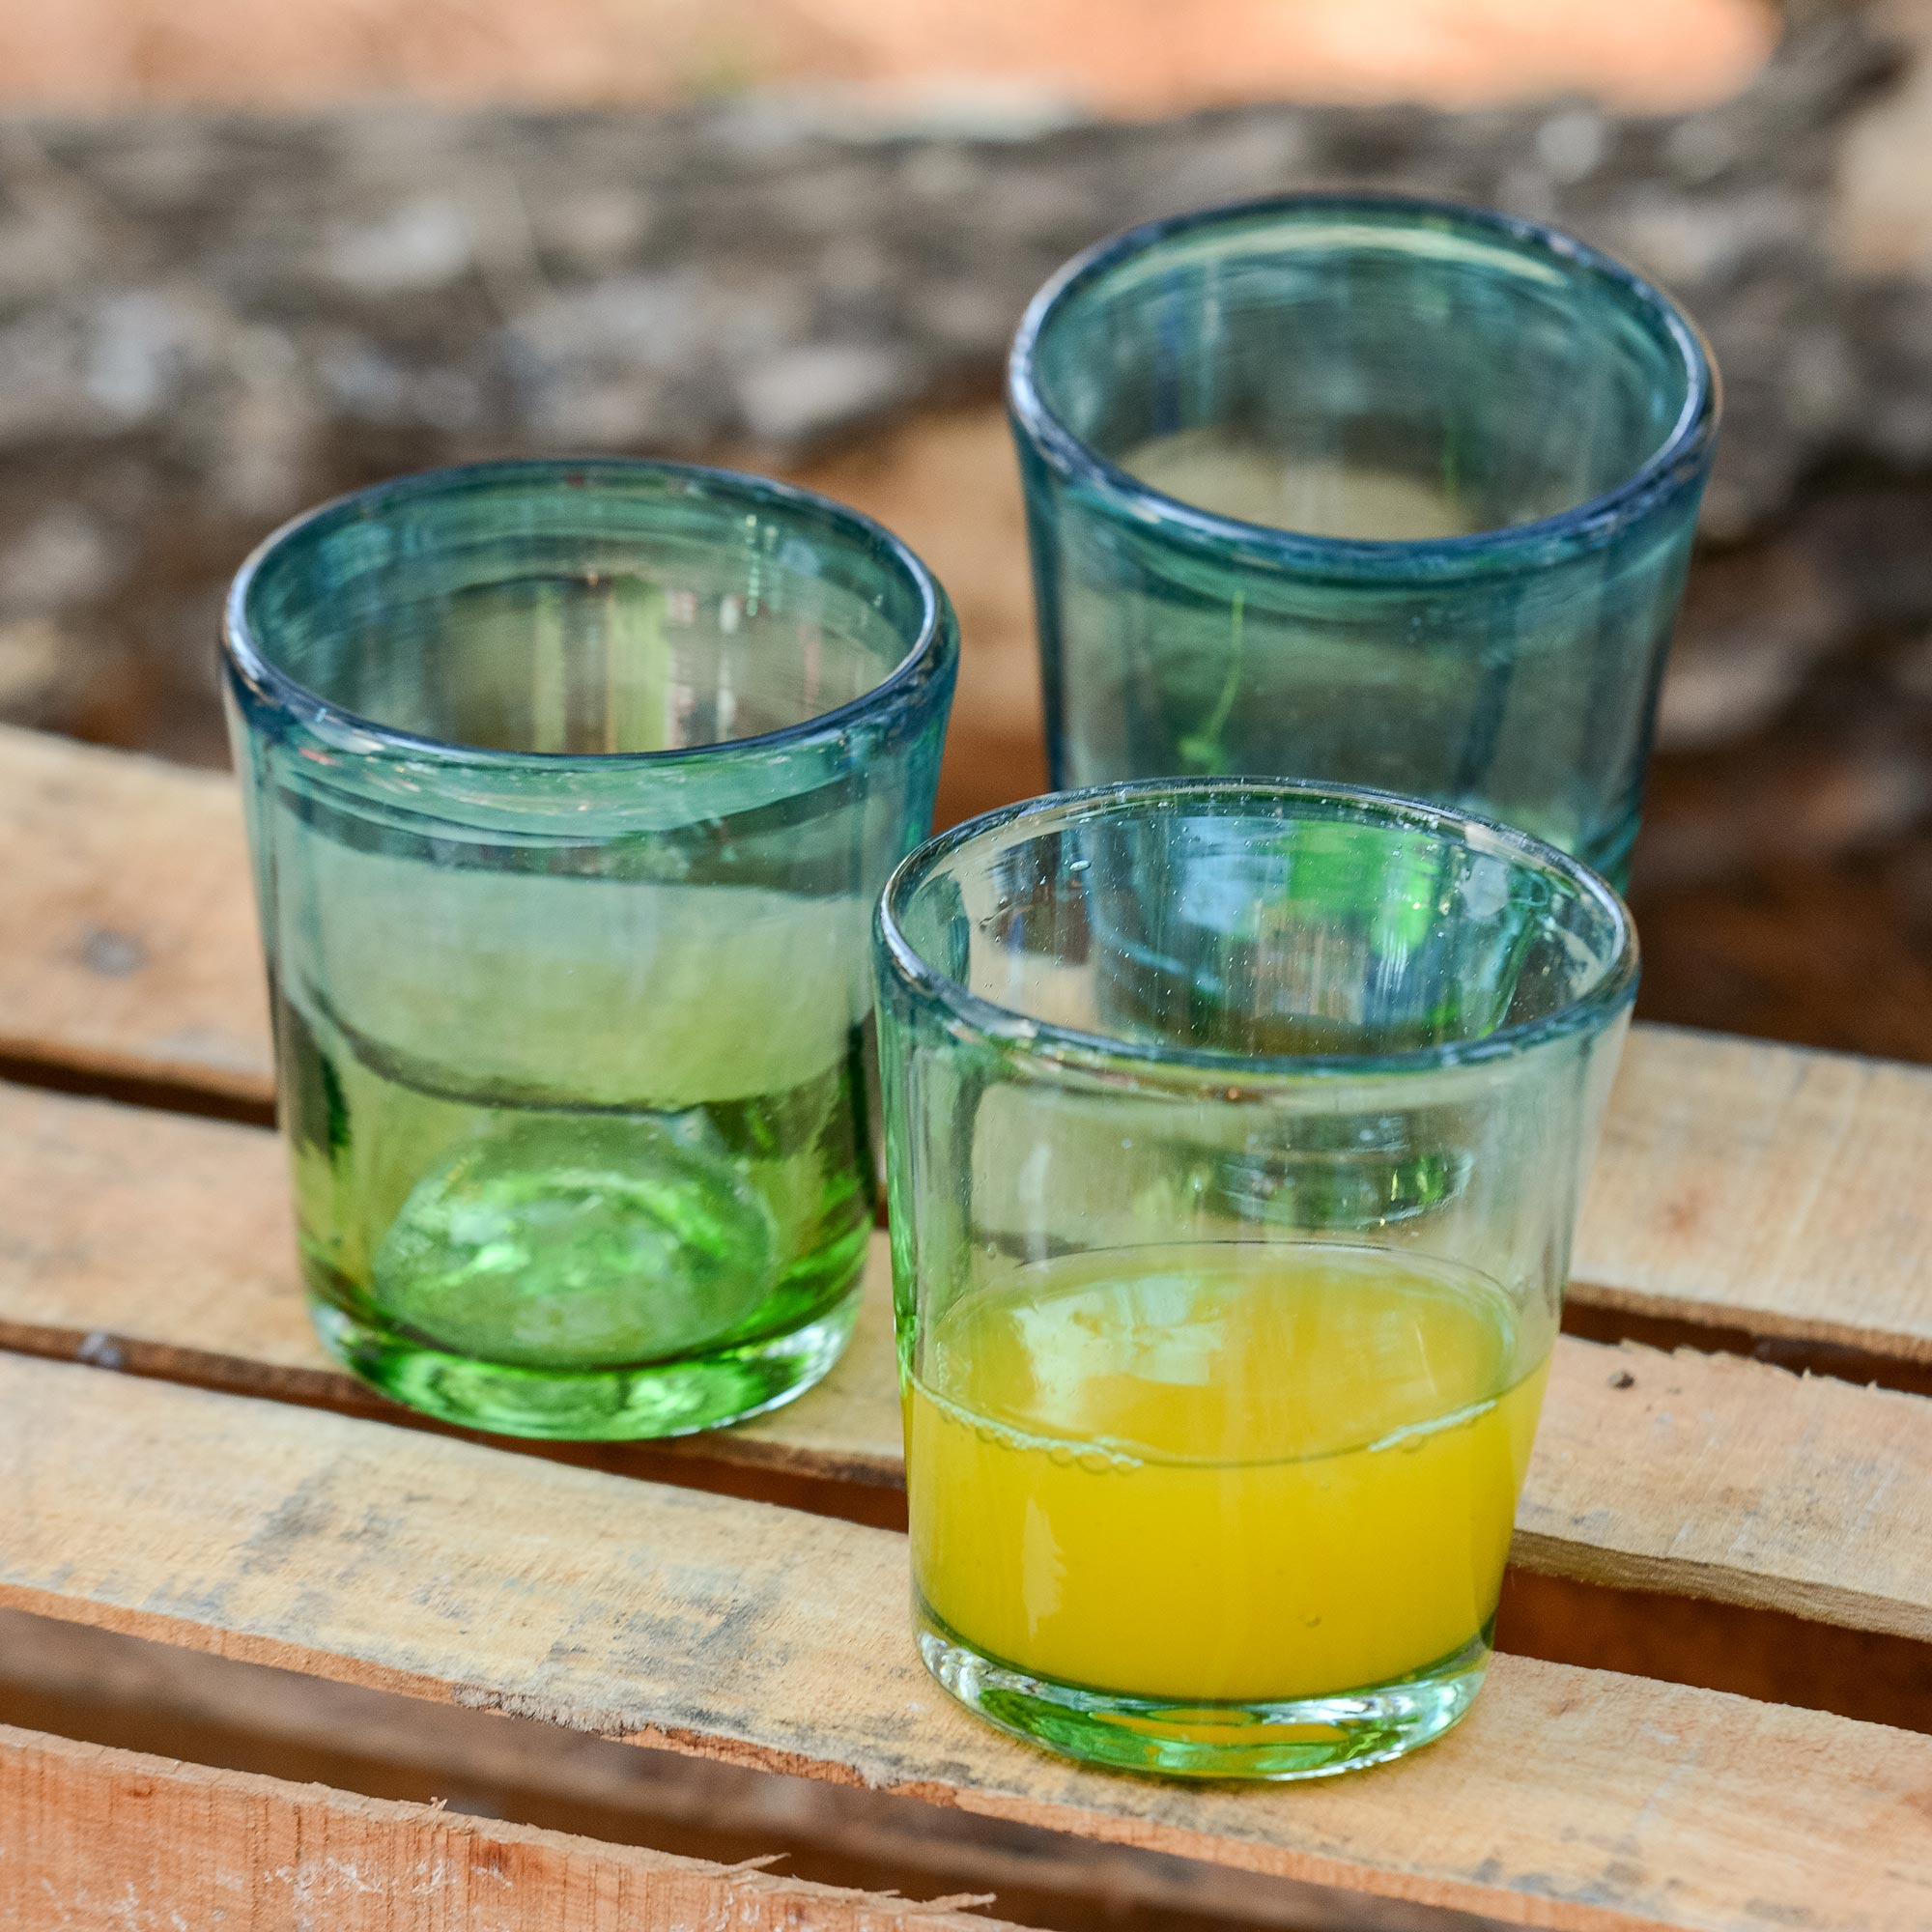 Blown glass rock glasses, 'Aurora Tapatia' (set of 6) - Super pretty summer glassware ice pitcher